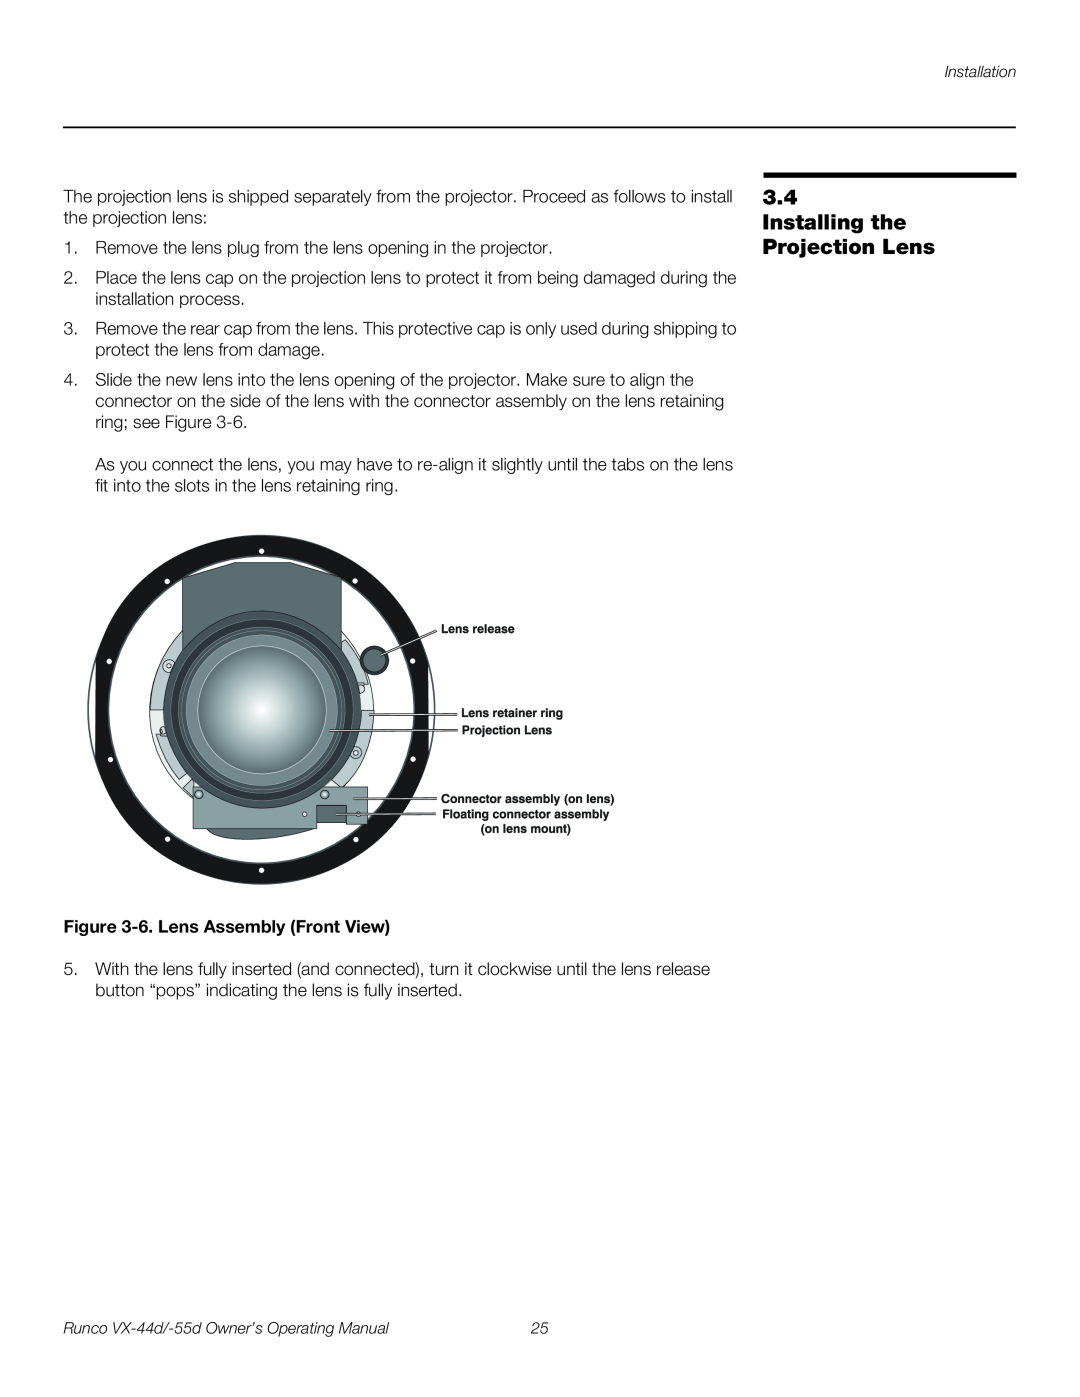 Runco VX-55D, VX-44D manual Installing the Projection Lens, 6. Lens Assembly Front View 